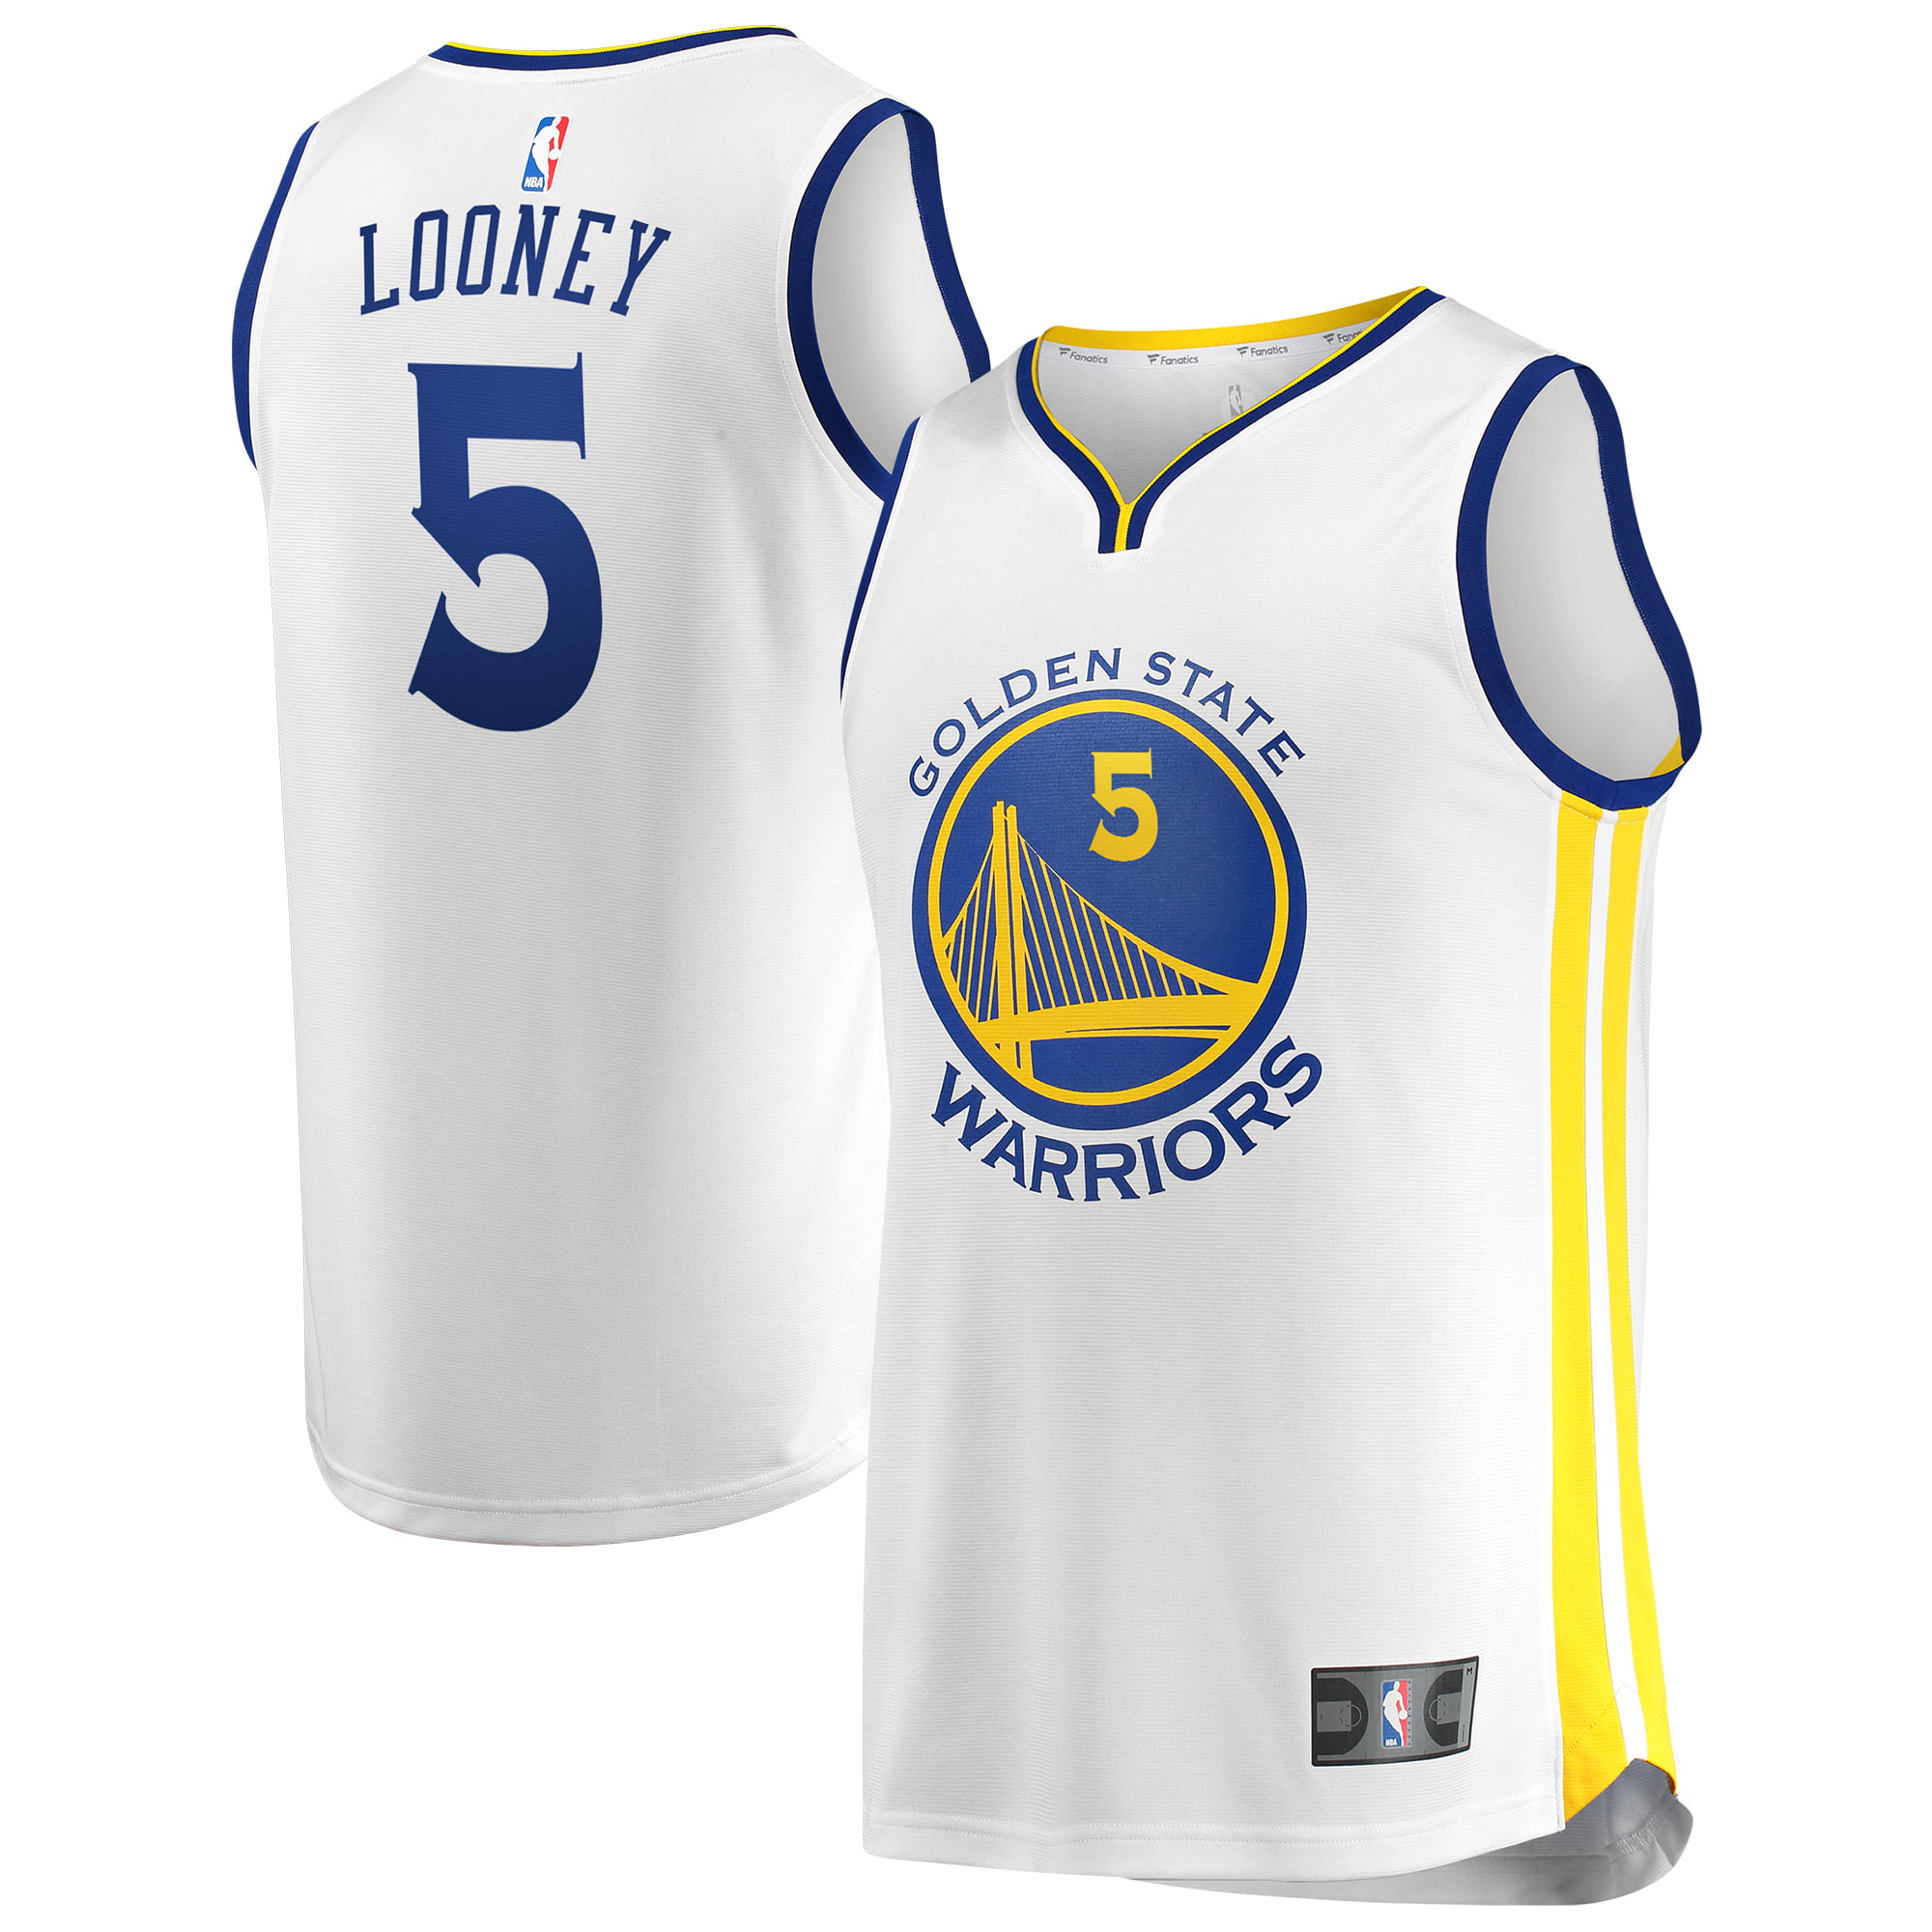 looney warriors jersey